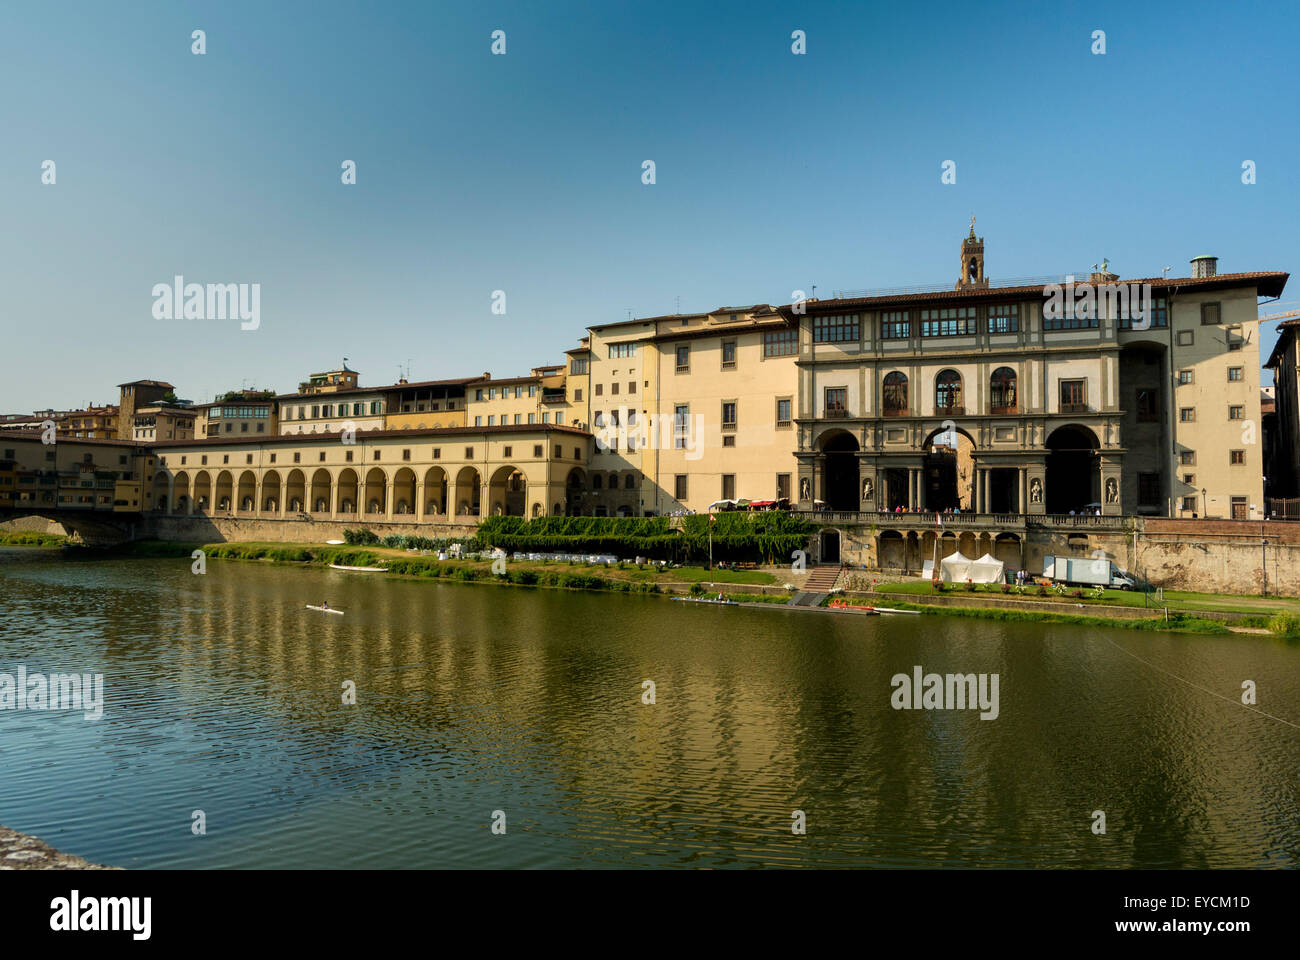 Uffizi Gallery, Florence, Italy. Stock Photo